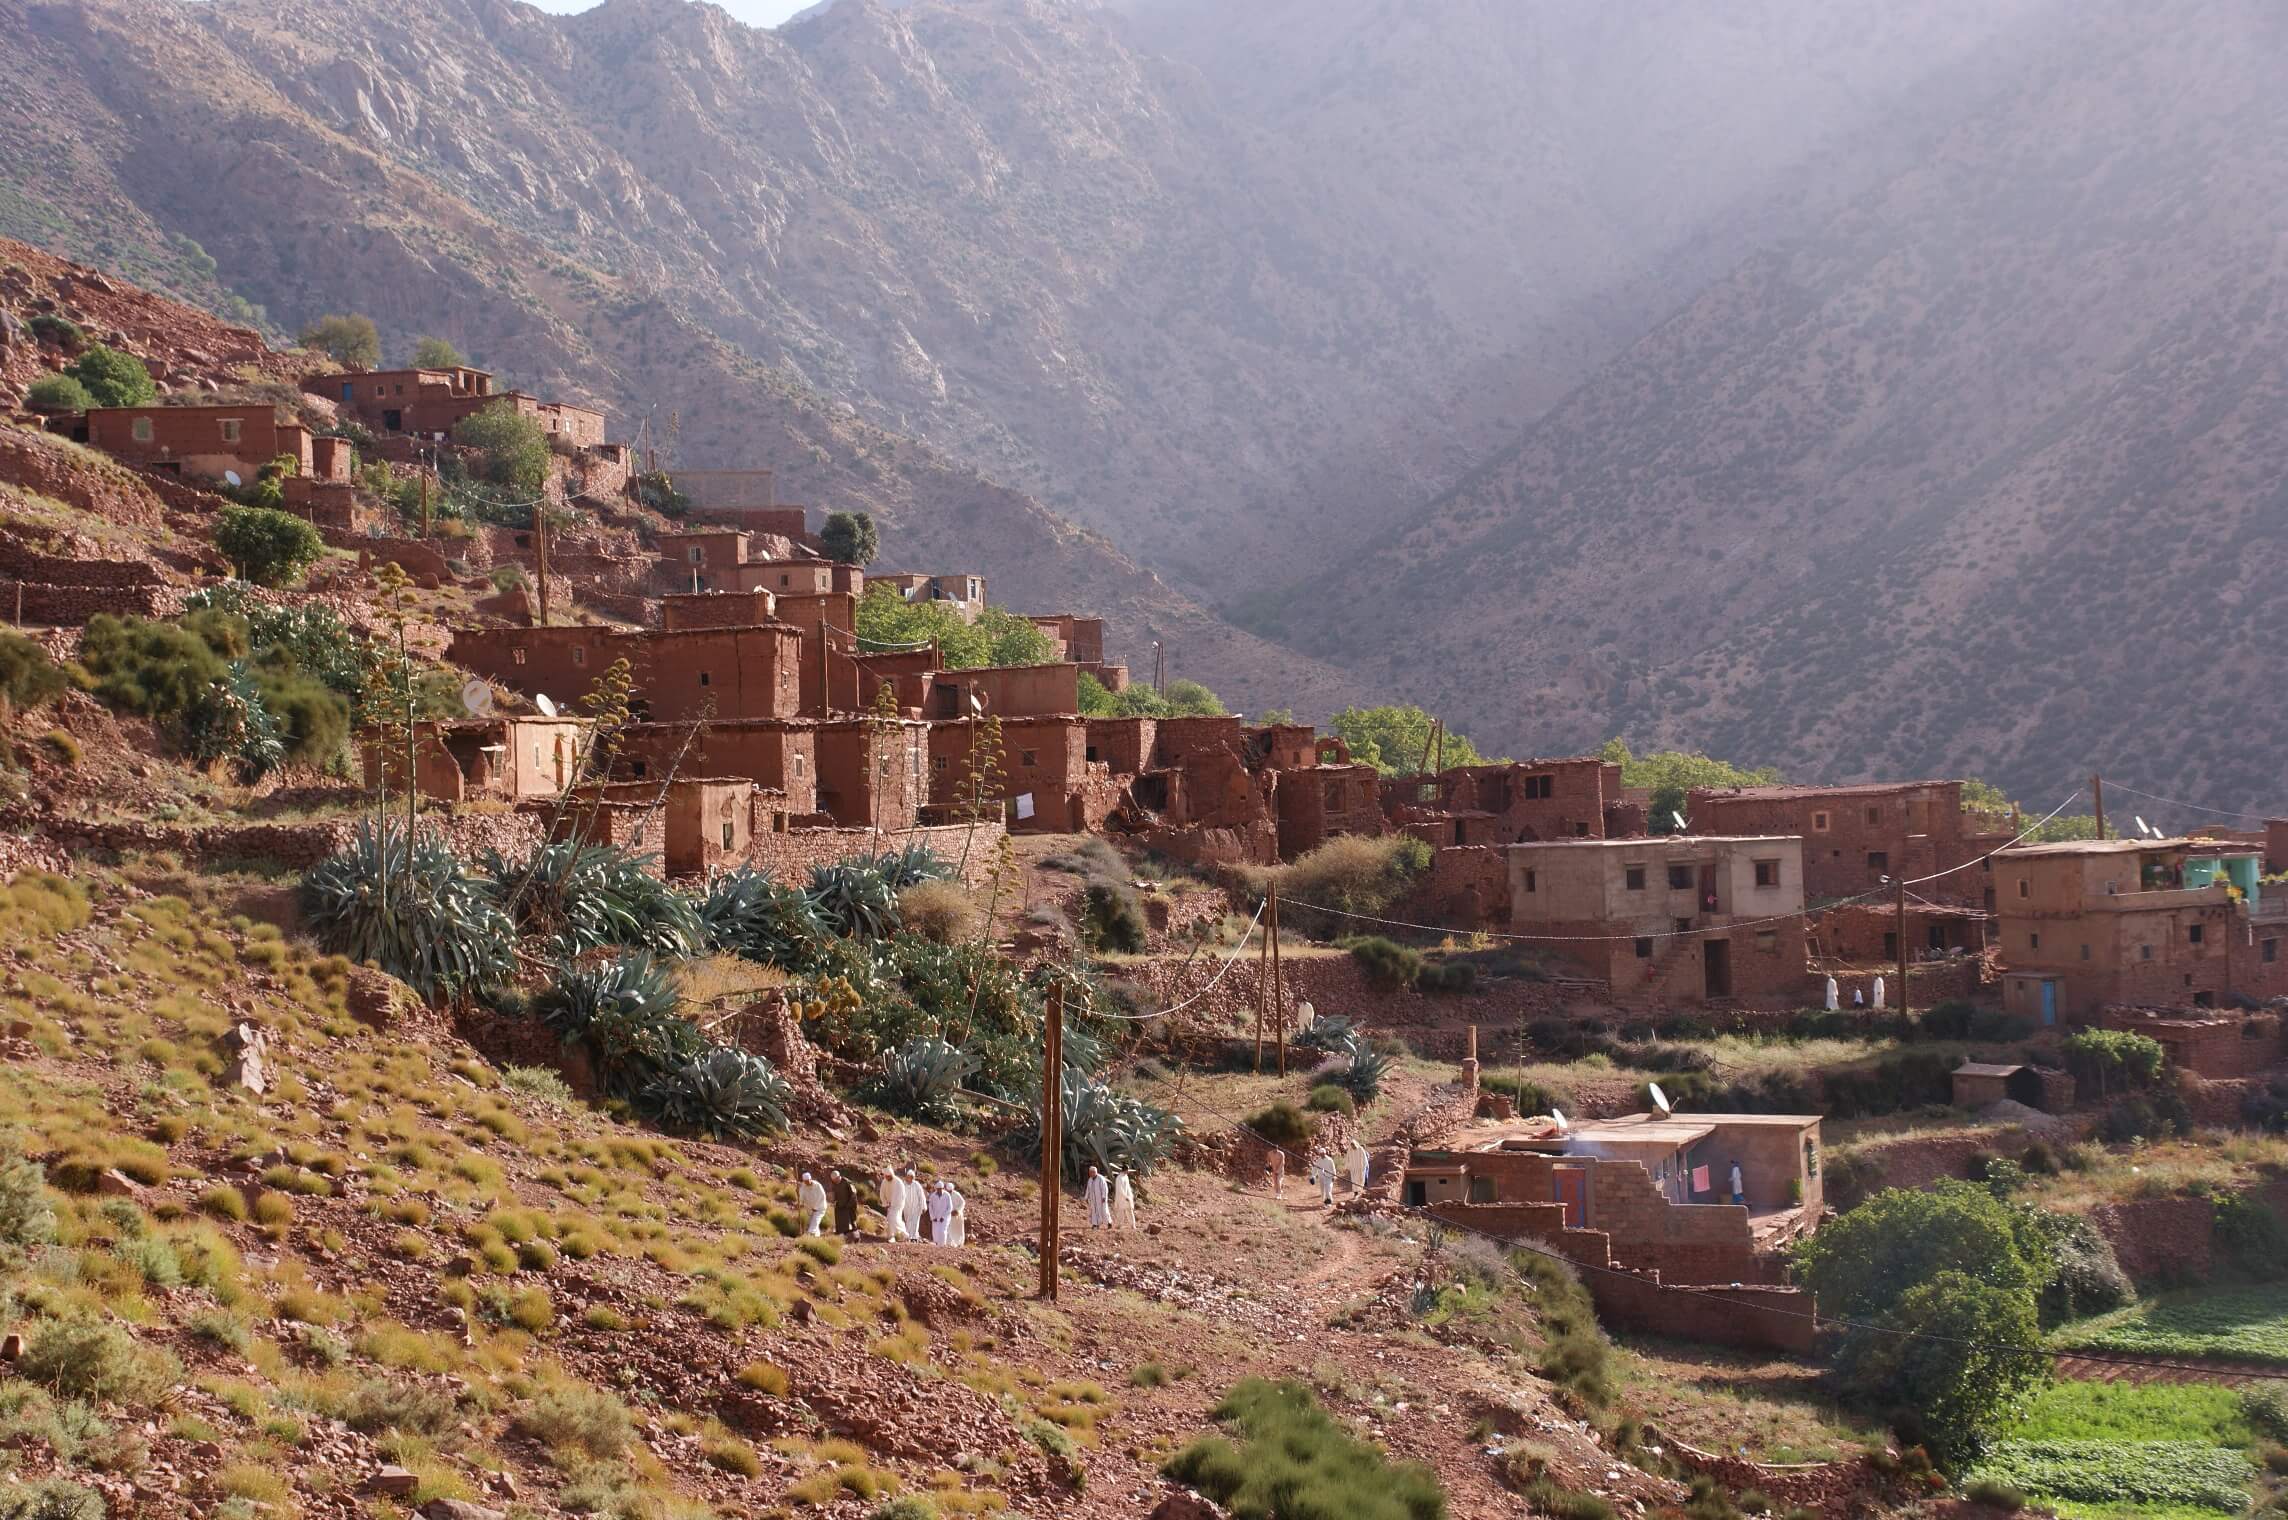 Viaggio nei villaggi e nelle valli dell’alto atlante berbero – 6 giorni - Morocco By Marrakech